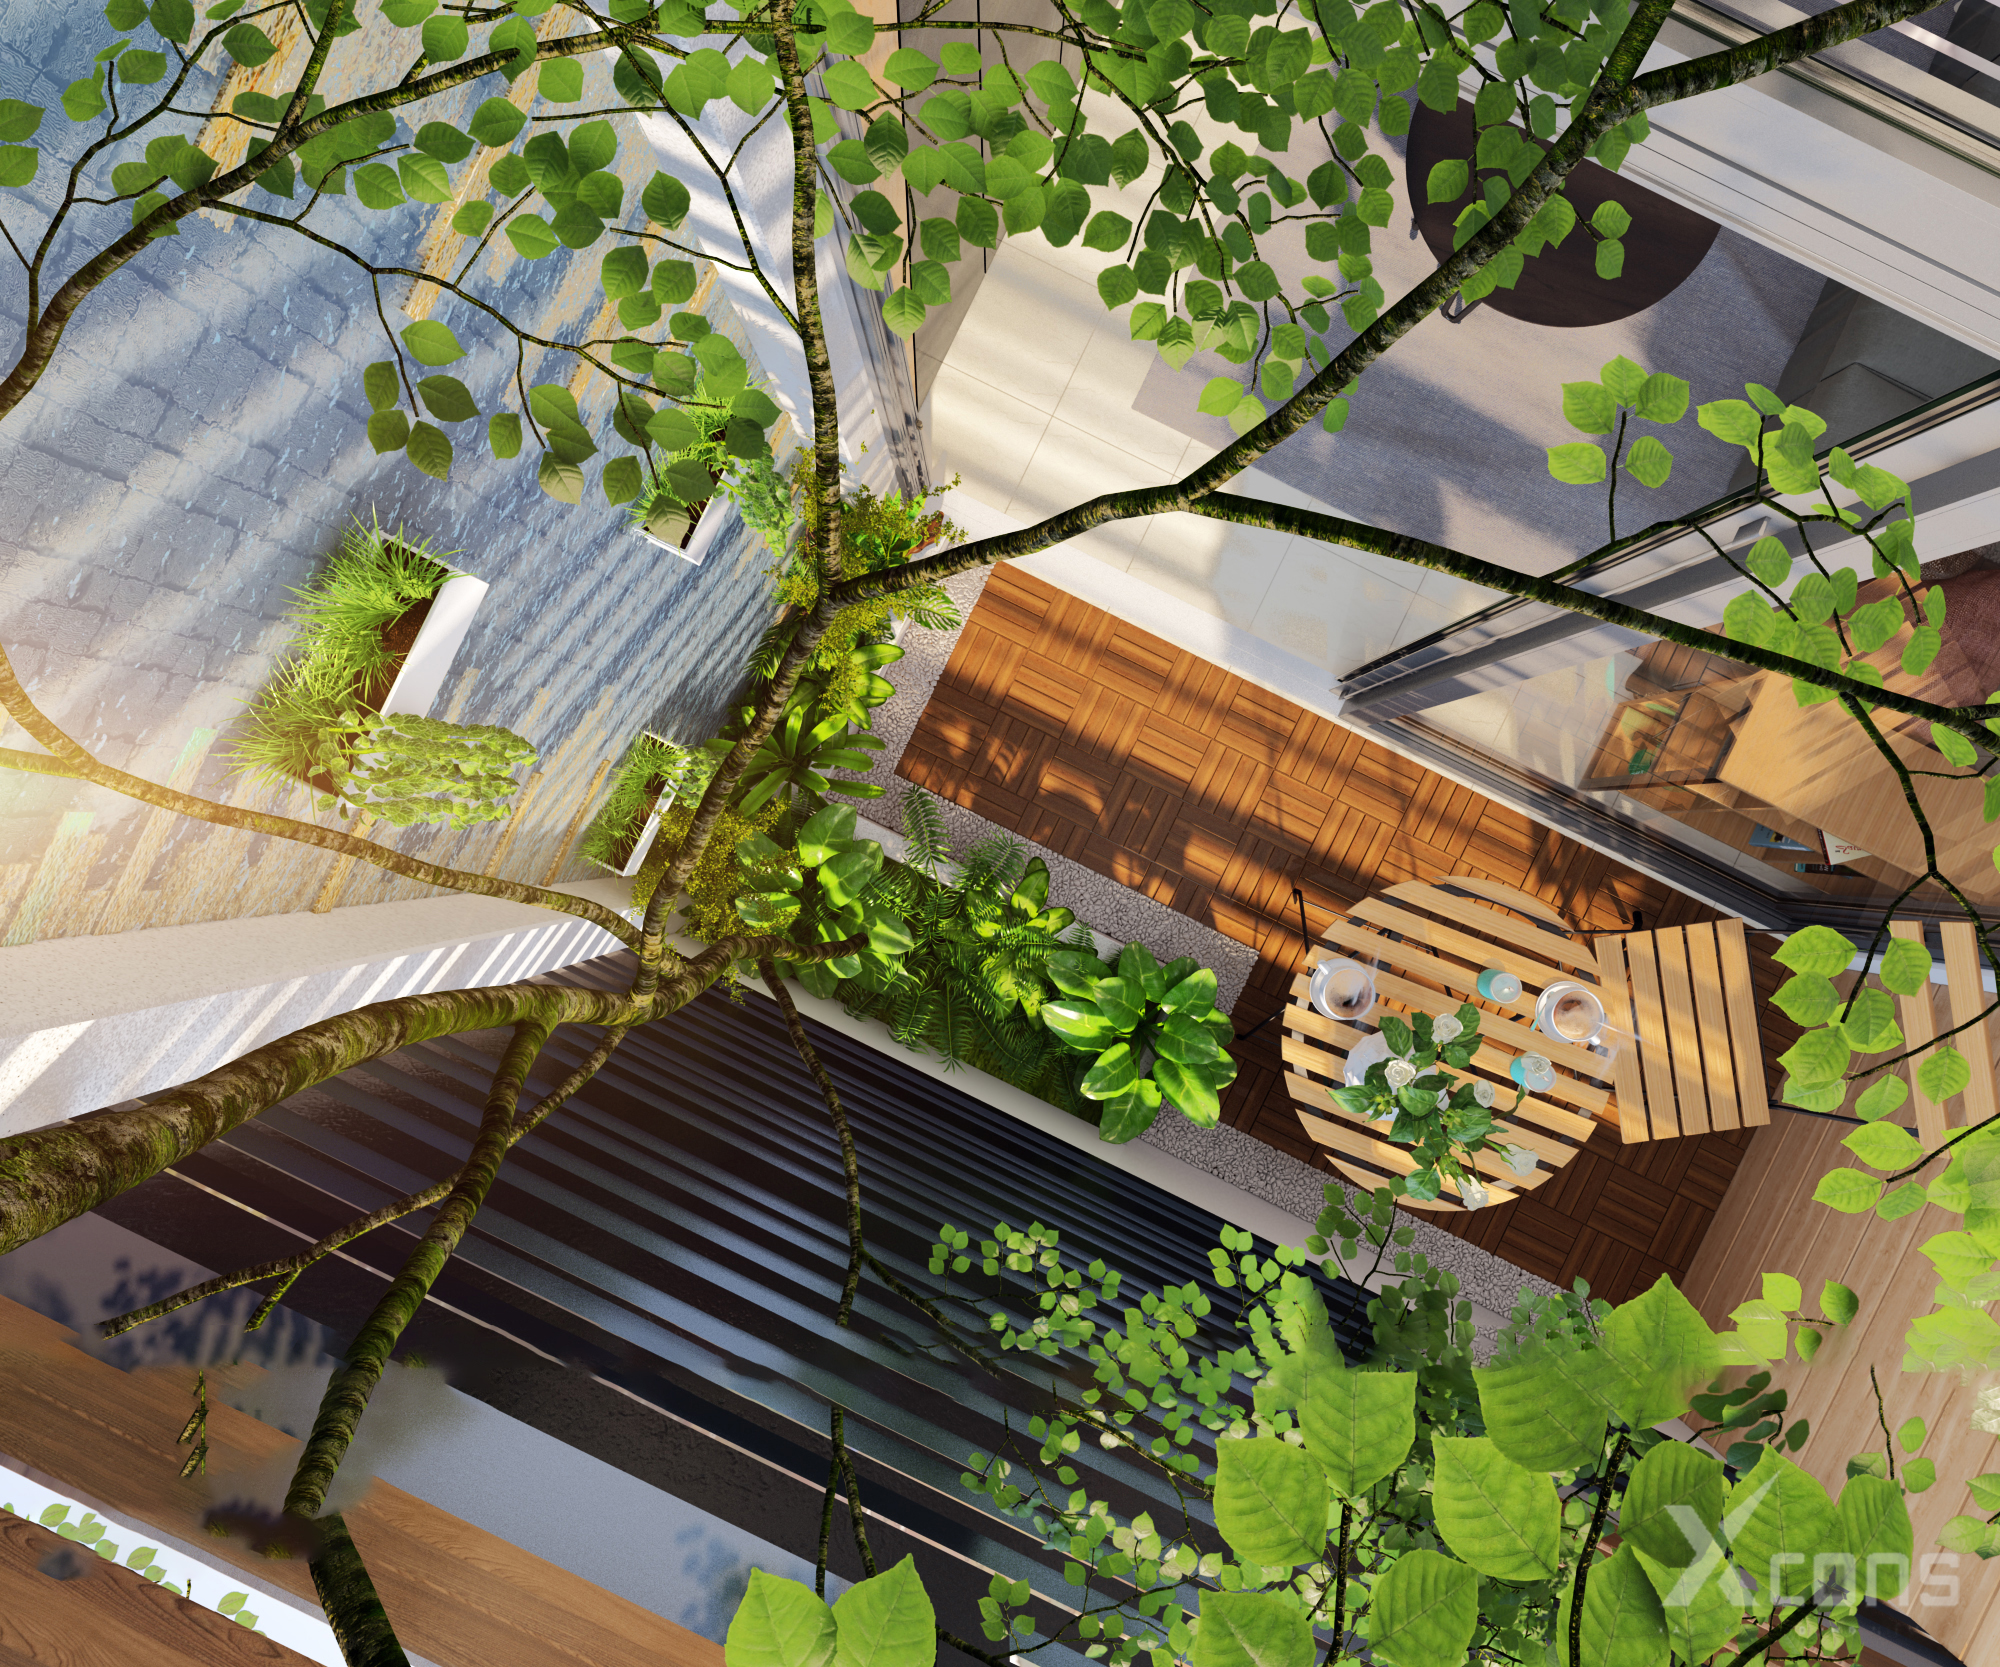 Thiết kế sân vườn tầng một giúp điều hòa không khí và tạo cảm giác mát mẻ